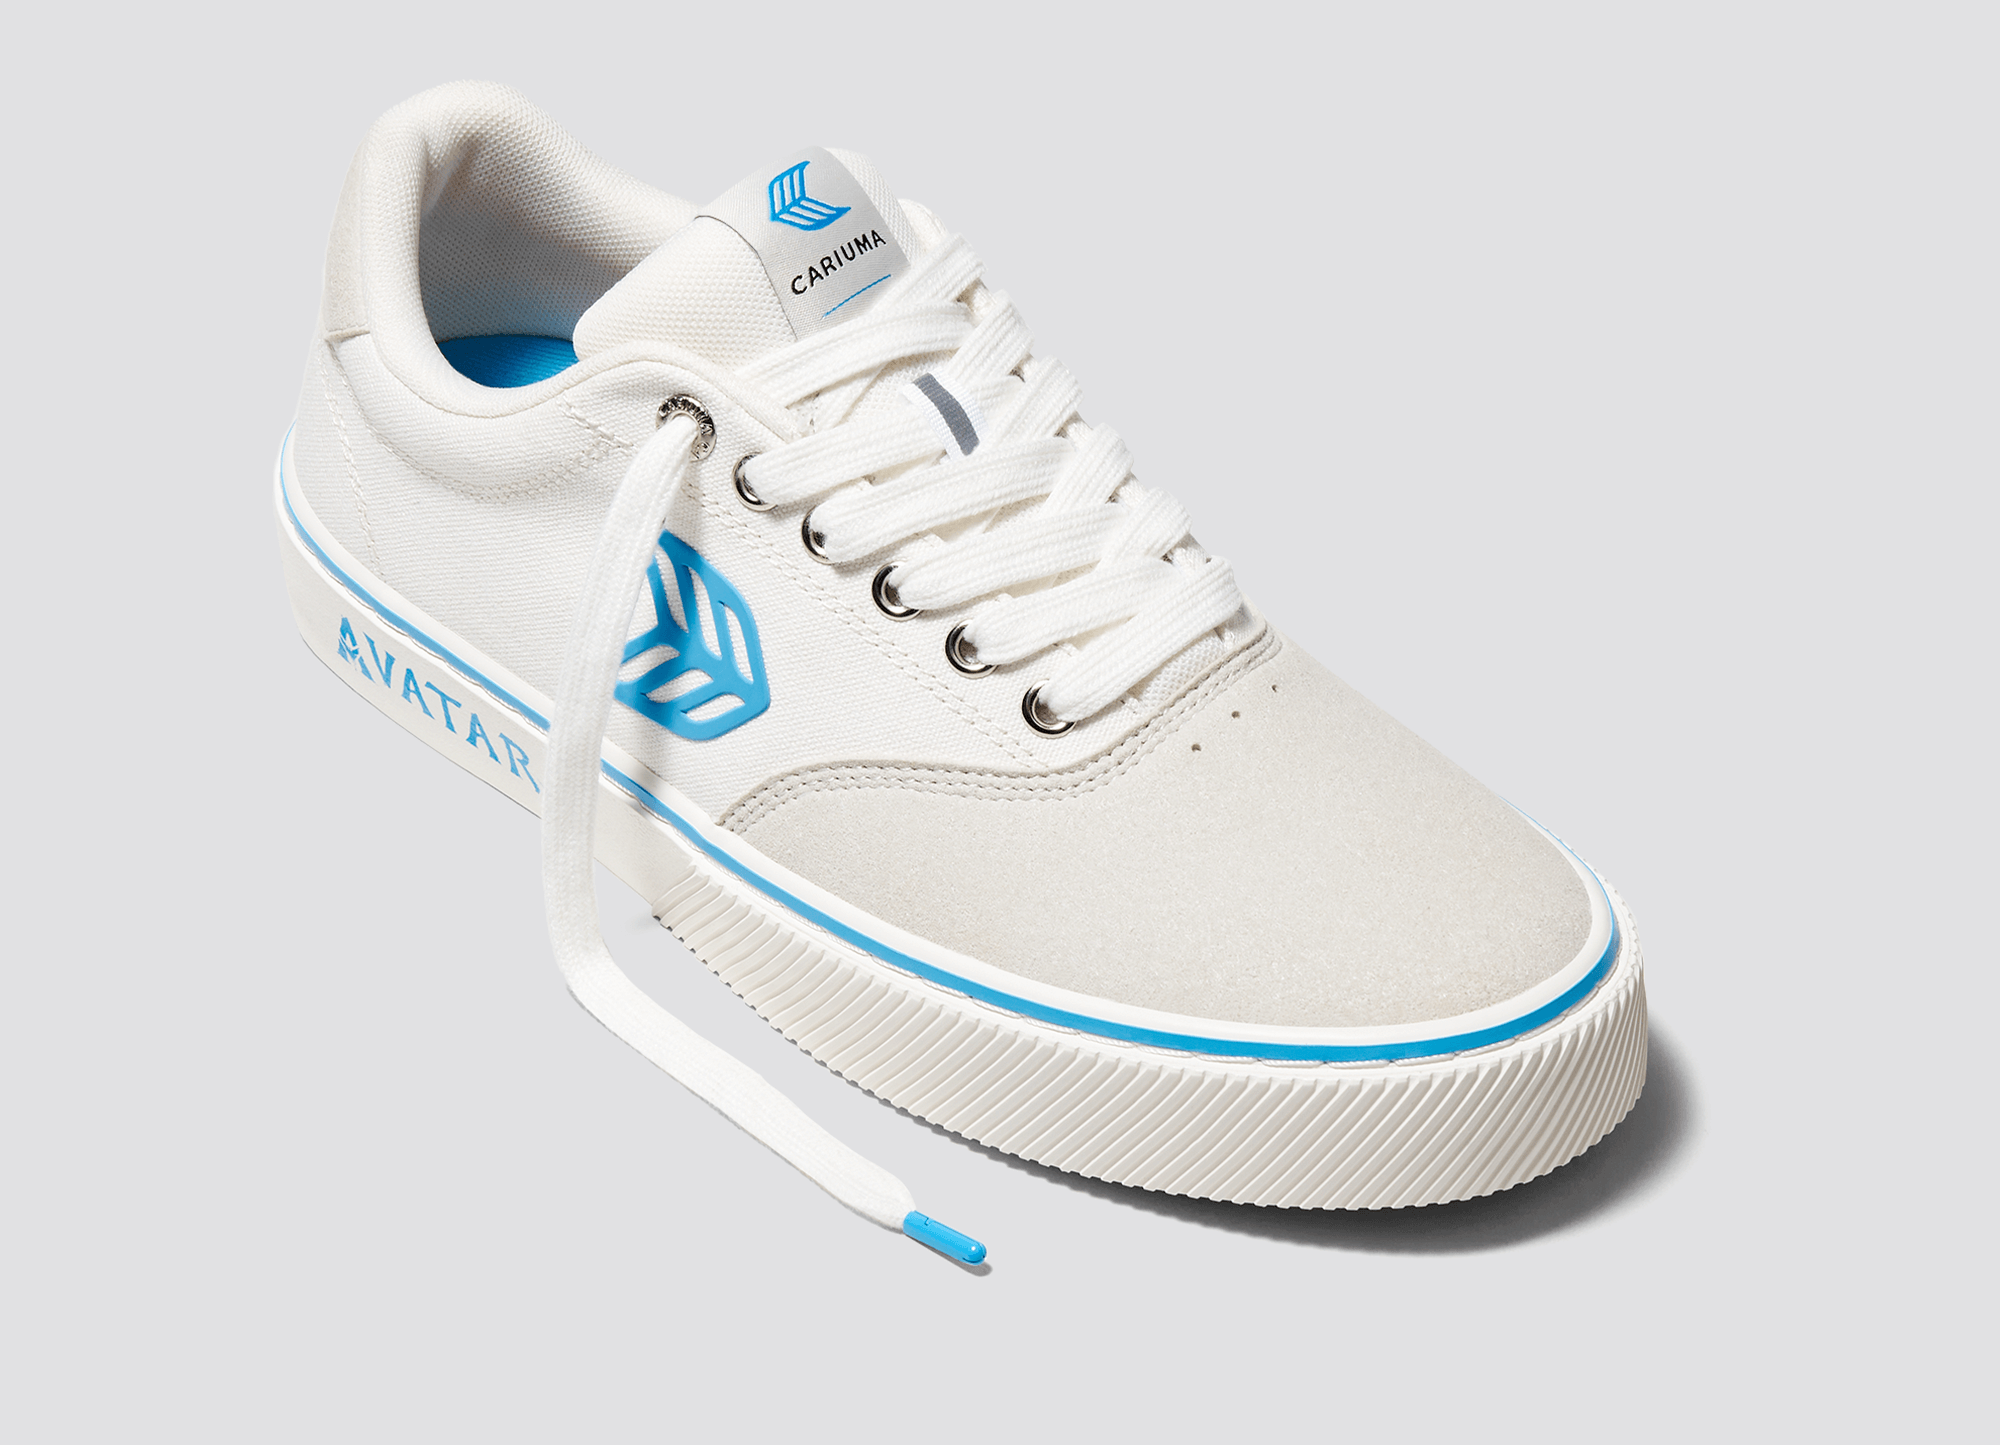 Cariuma - một thương hiệu giày thể thao hàng đầu, đã cho ra đời mẫu giày thể thao nữ thấp Avatar Off-White NAIOCA Pro knock off siêu đẳng. Hãy cùng điểm qua những đường nét tinh tế và phong cách trẻ trung, năng động của mẫu giày này nhé. Chắc chắn bạn sẽ không thể bỏ lỡ.